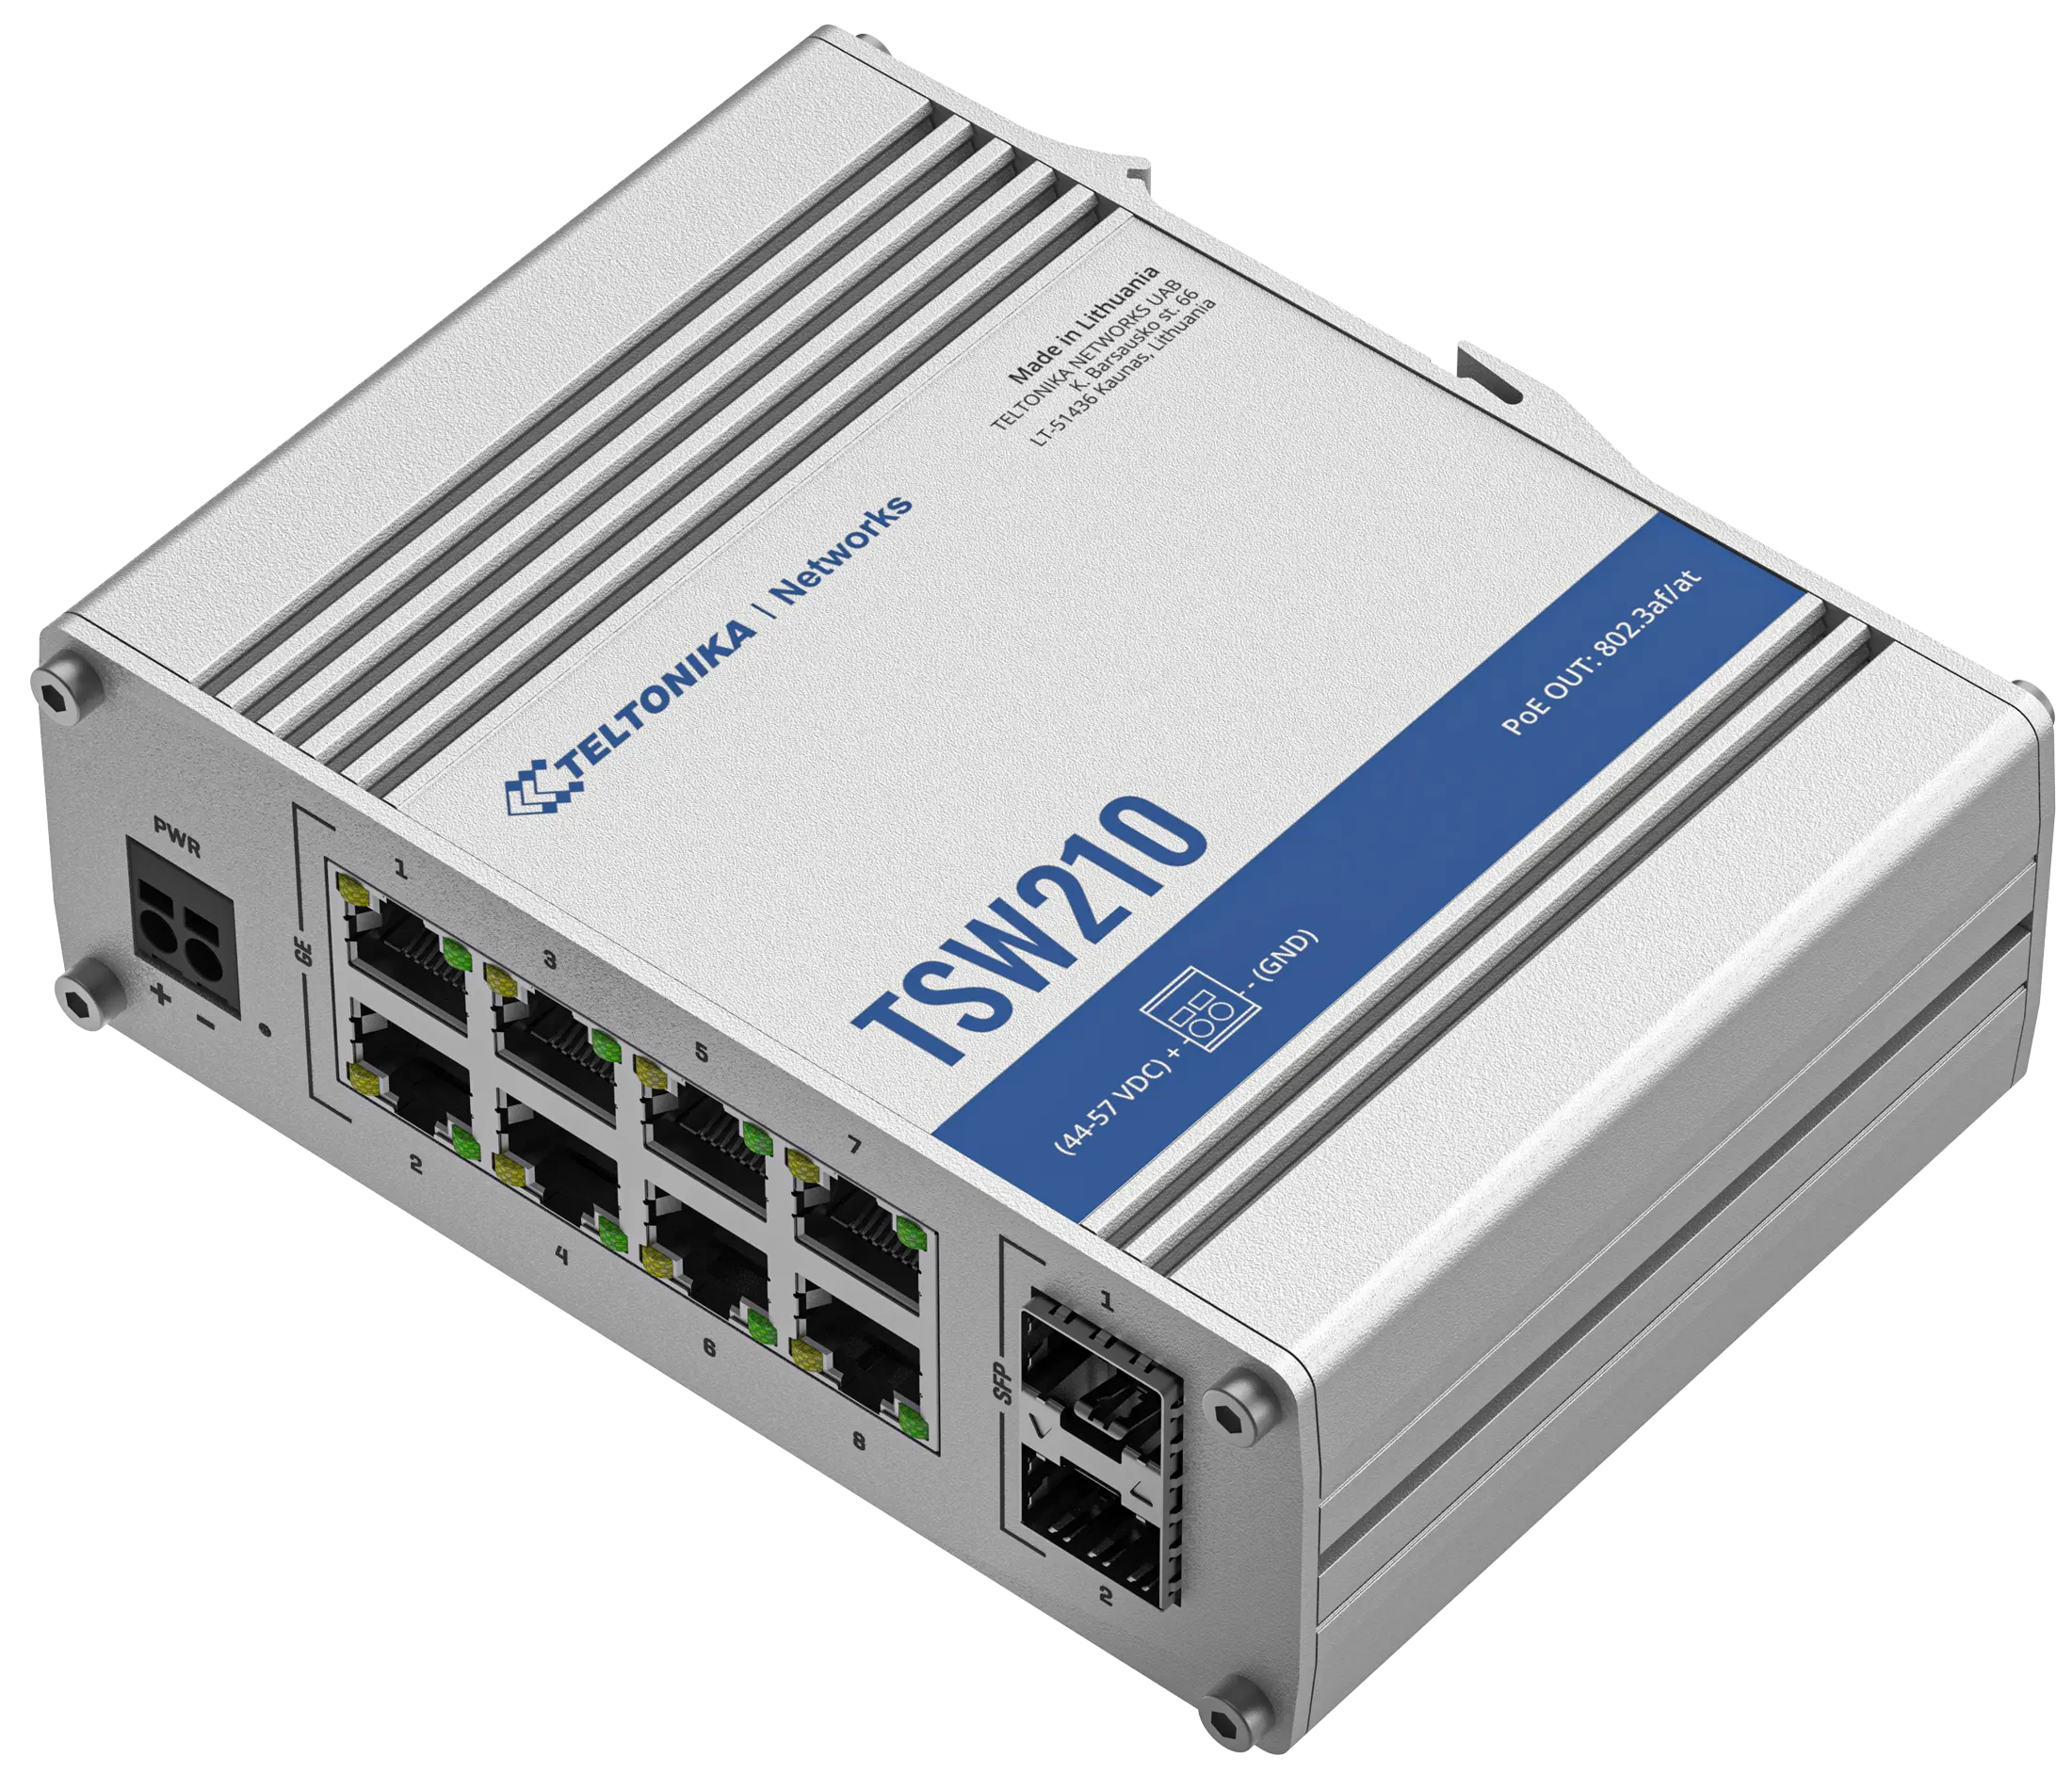 텔토니카 TSW210 DIN 레일 스위치 8x10/100/1000 Mbps LAN 포트, 장거리 광섬유 통신을 위한 2 개의 SFP 포트